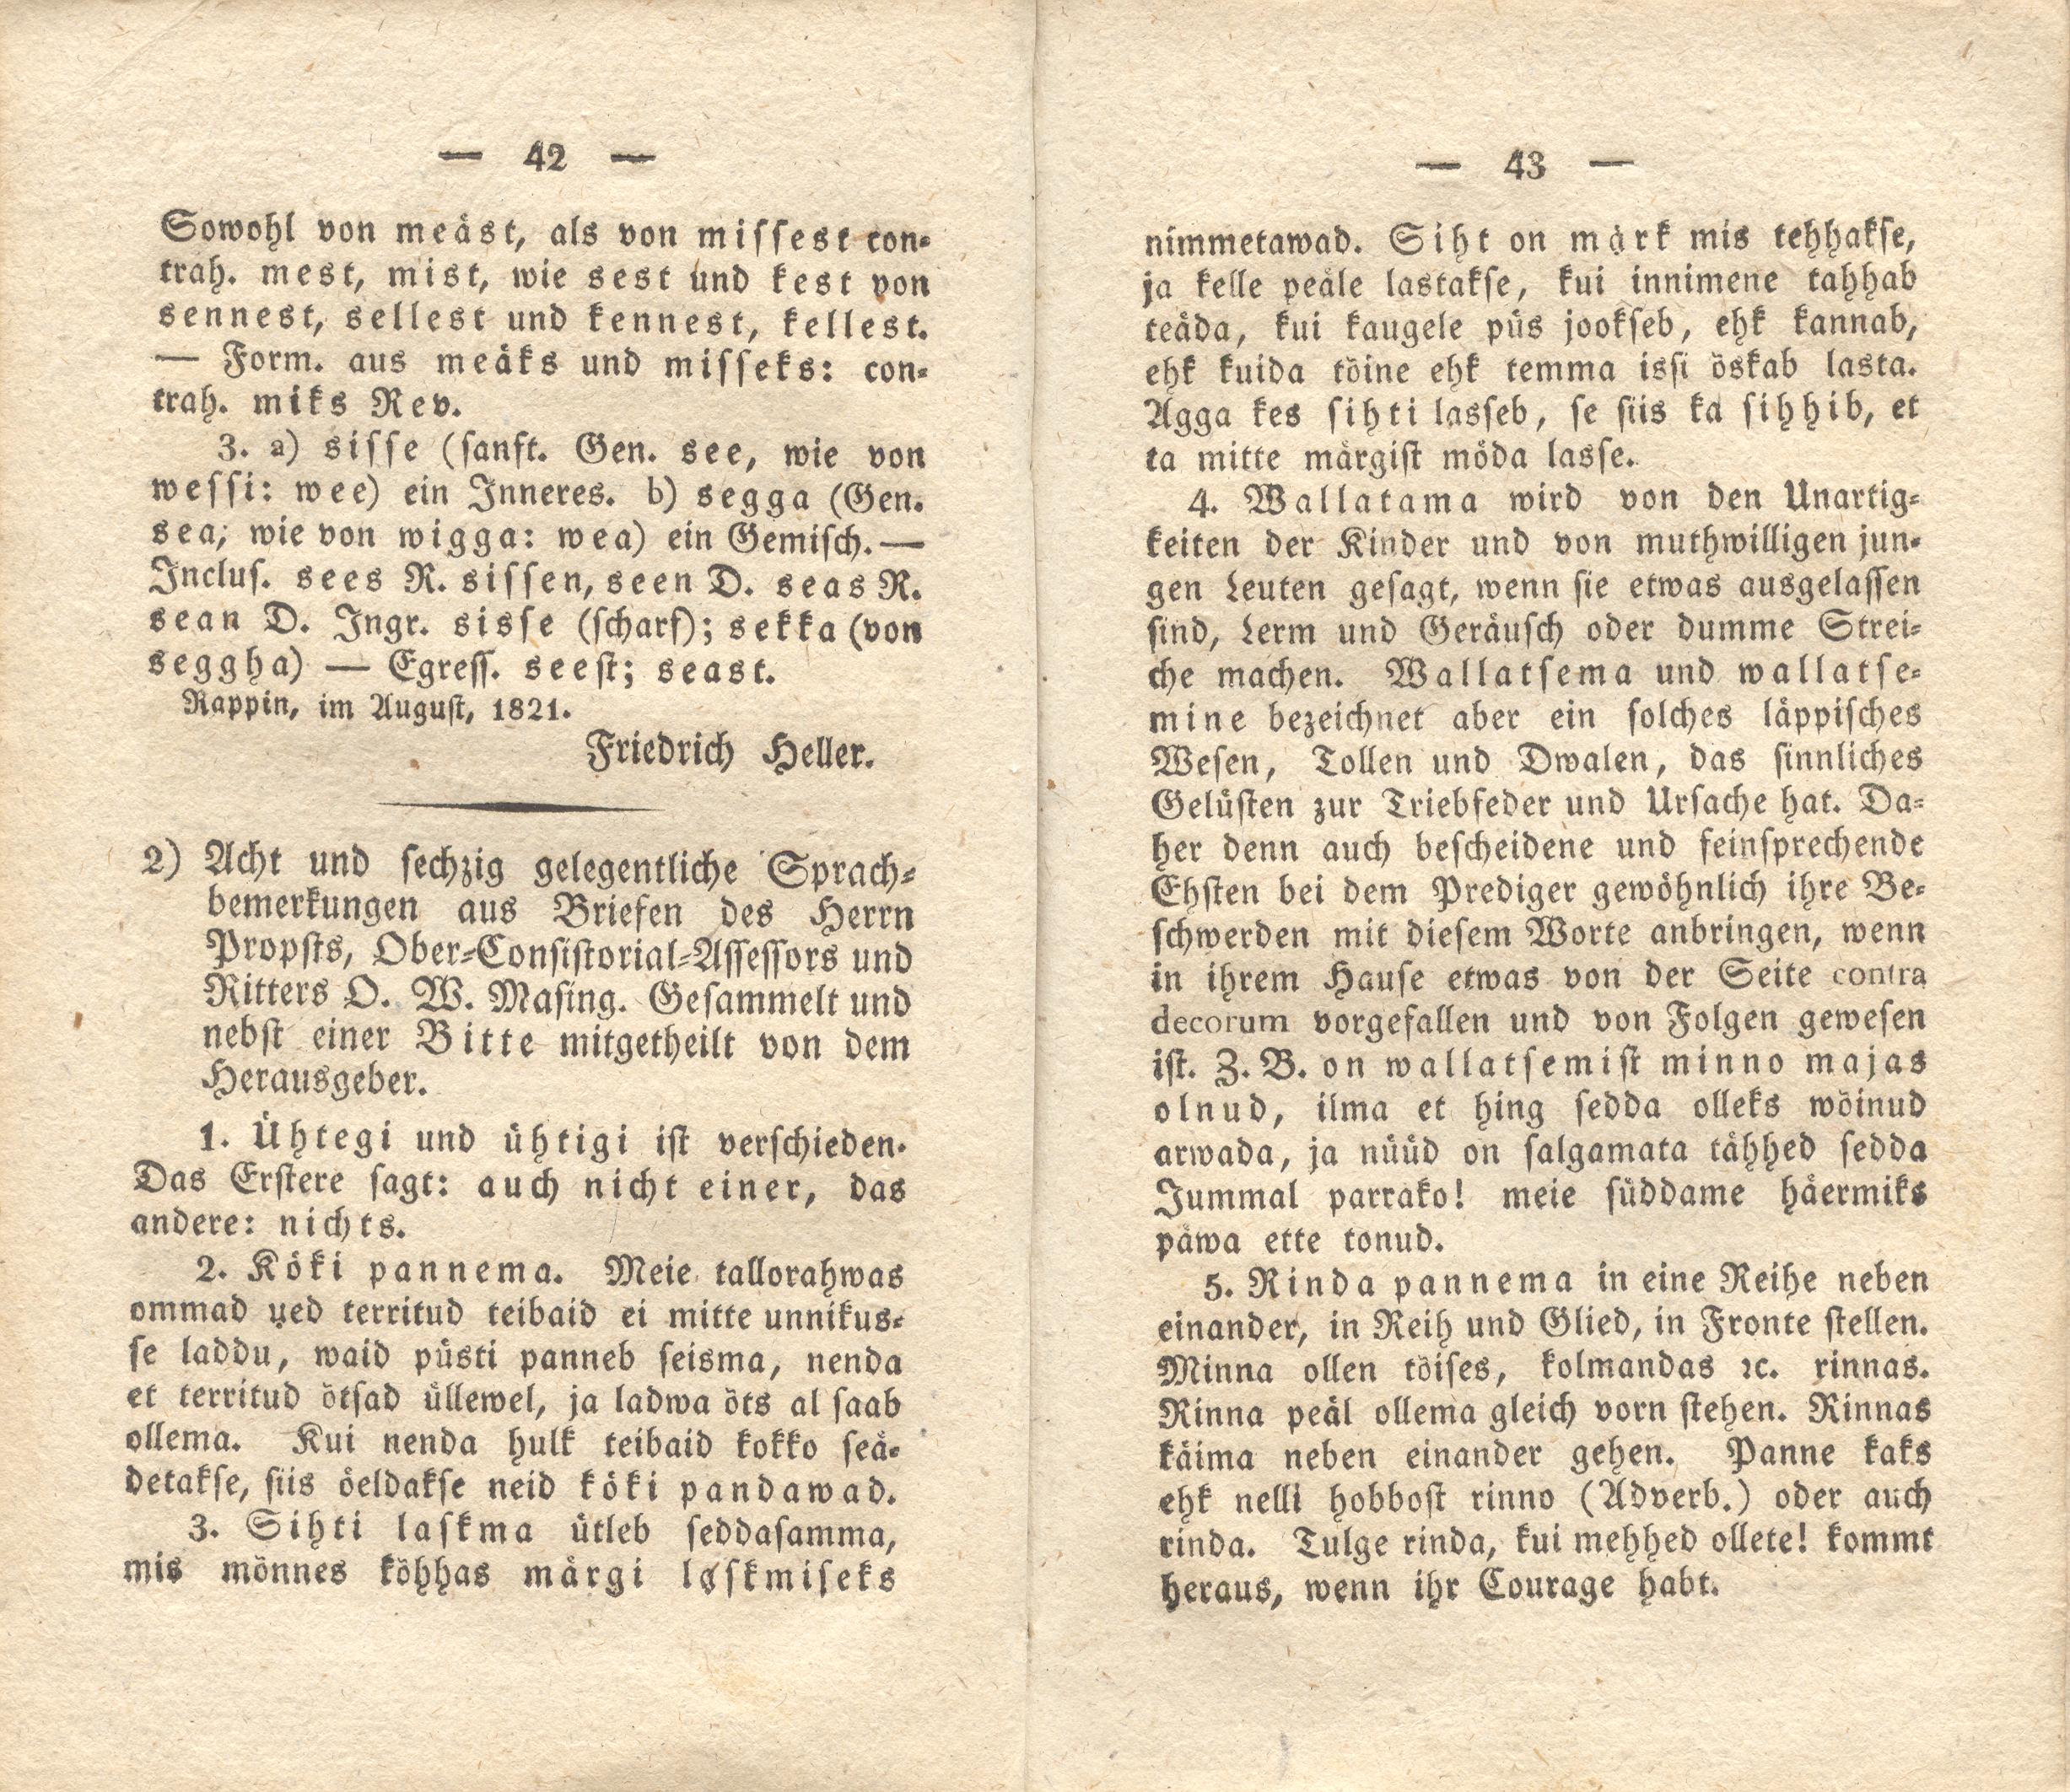 Acht und sechzig gelegentliche Sprachbemerkungen (1822) | 1. (42-43) Main body of text